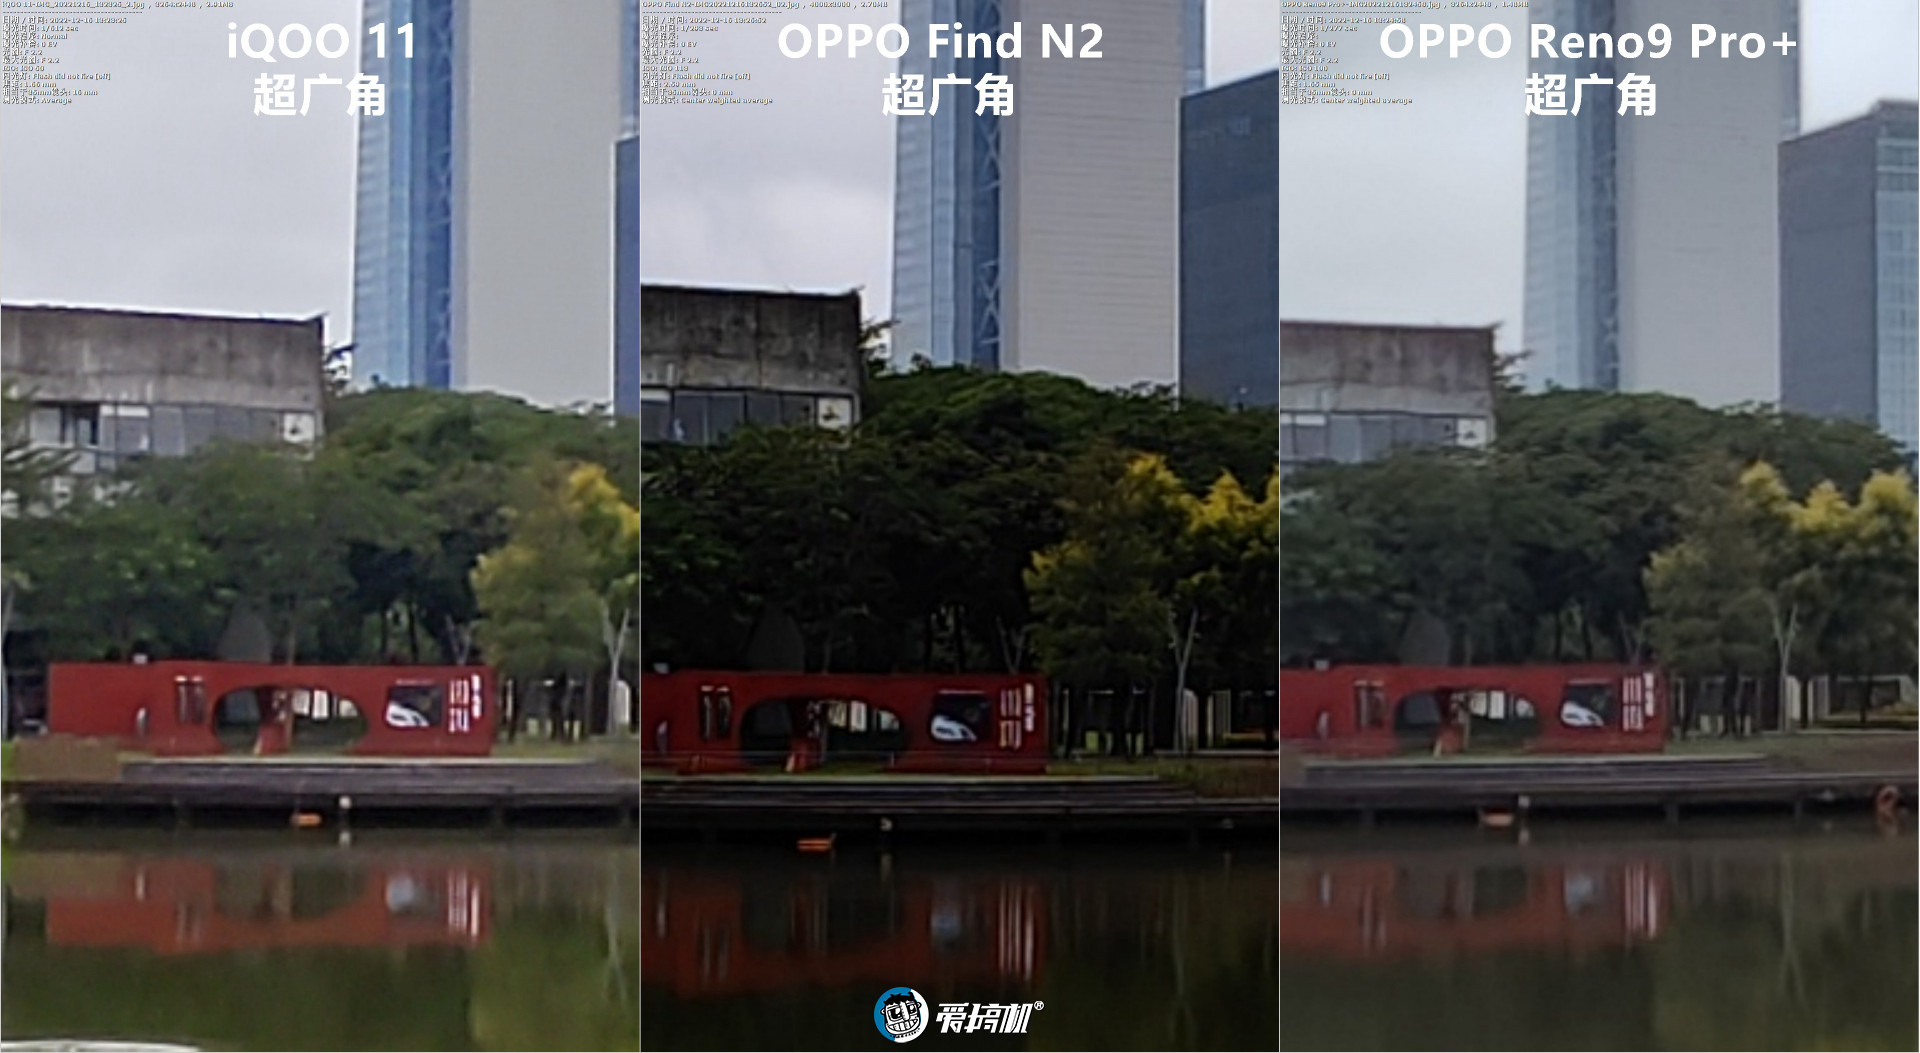 简单拍照对比：iQOO 11对OPPO Find N2、Reno9 Pro+